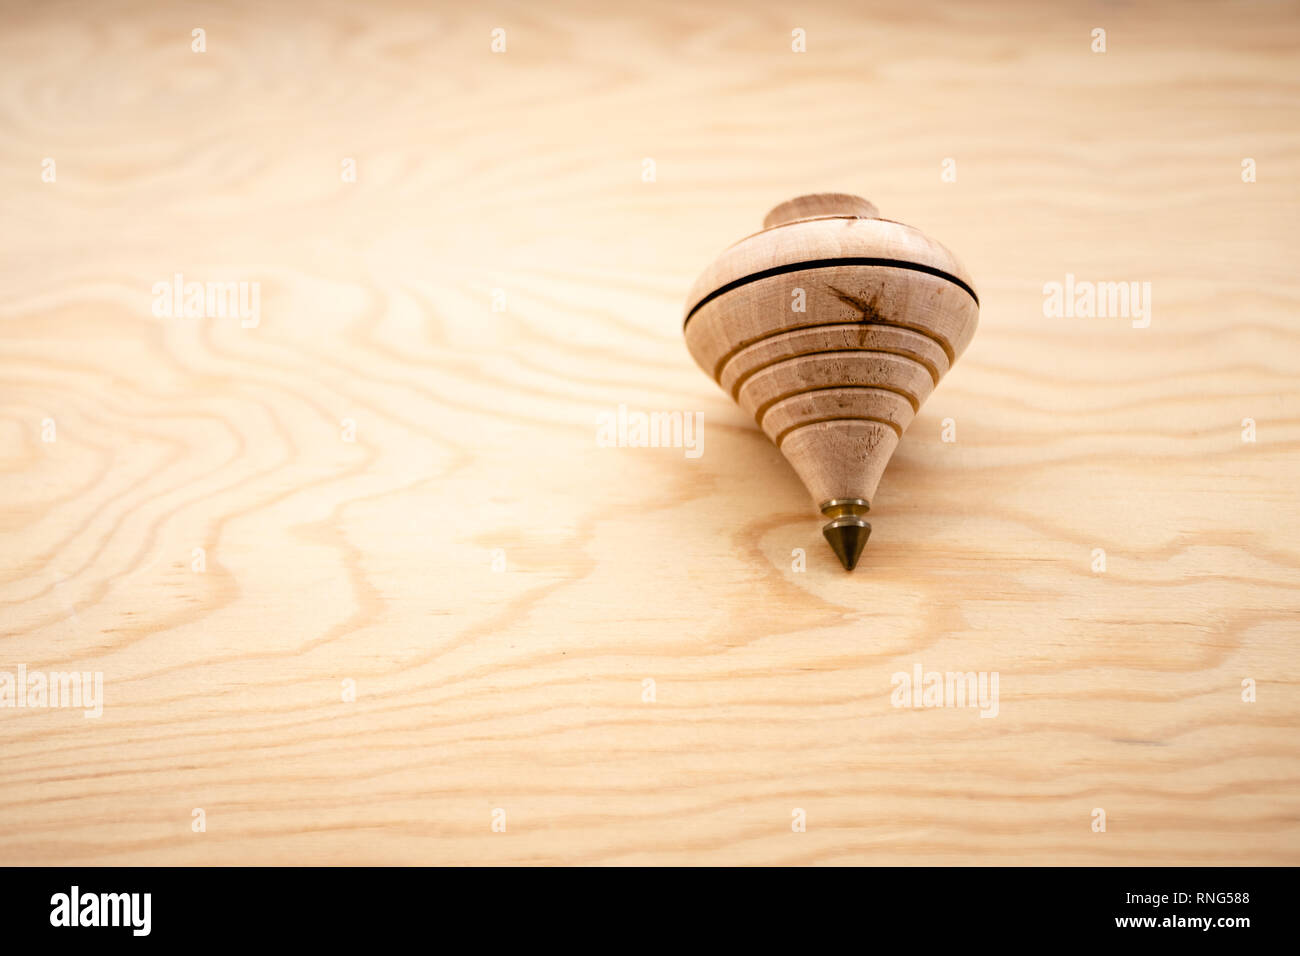 Jouet traditionnel appelé toupie en bois avec métal fin Photo Stock - Alamy